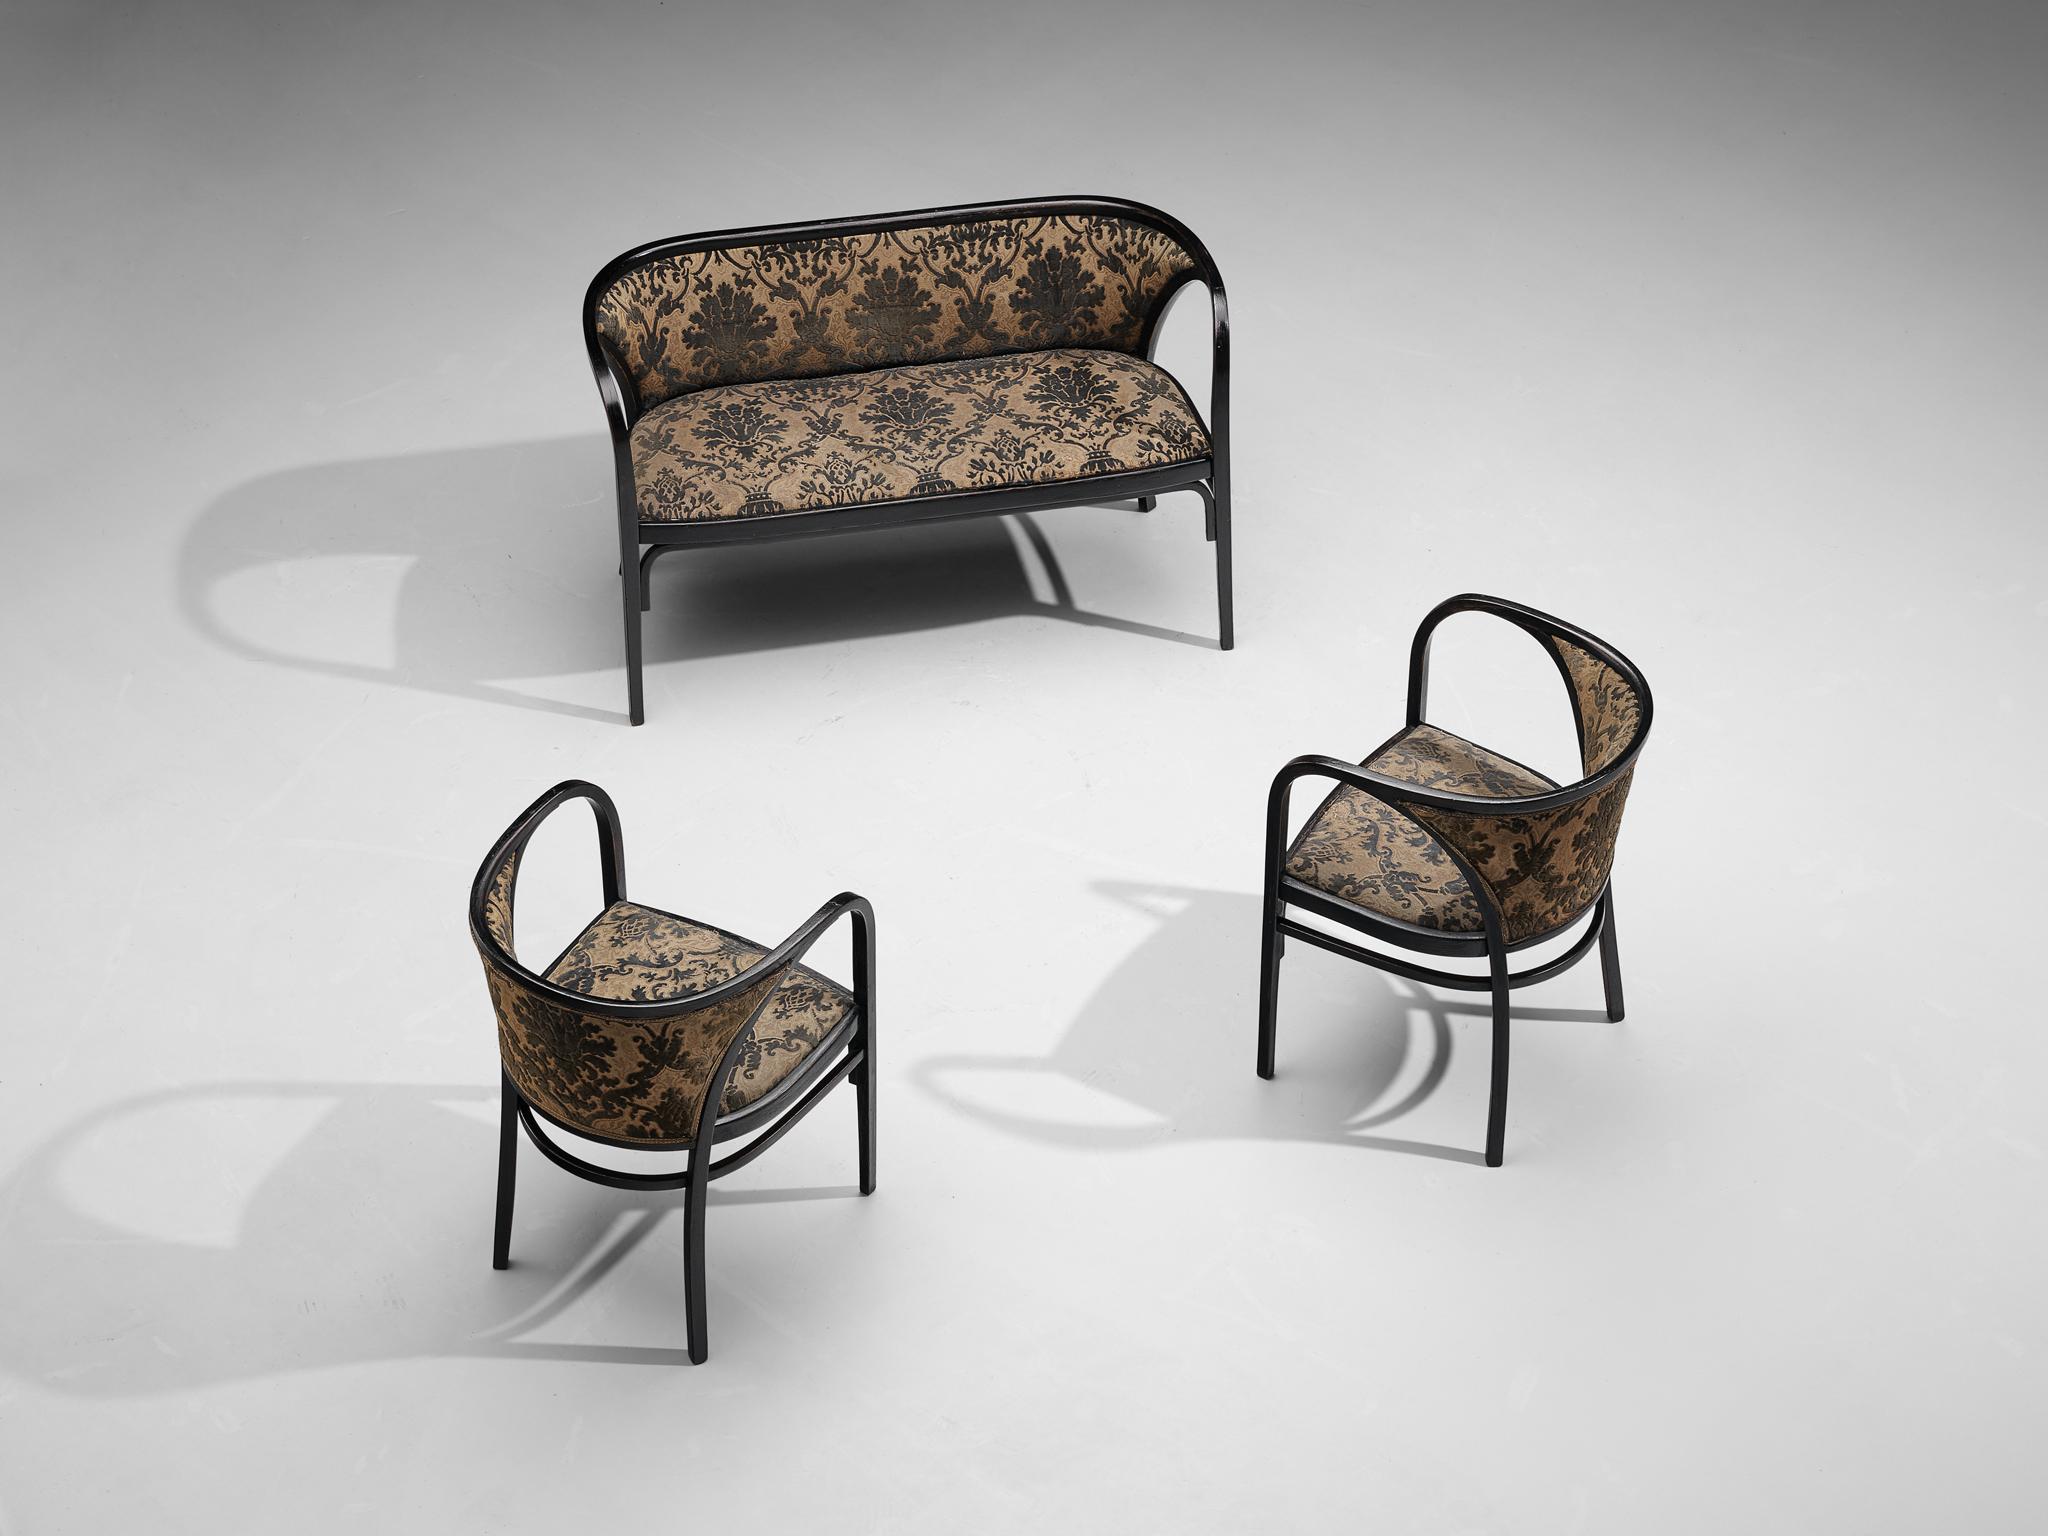  Marcel Kammerer for Thonet Bench in Floral Upholstery  For Sale 2